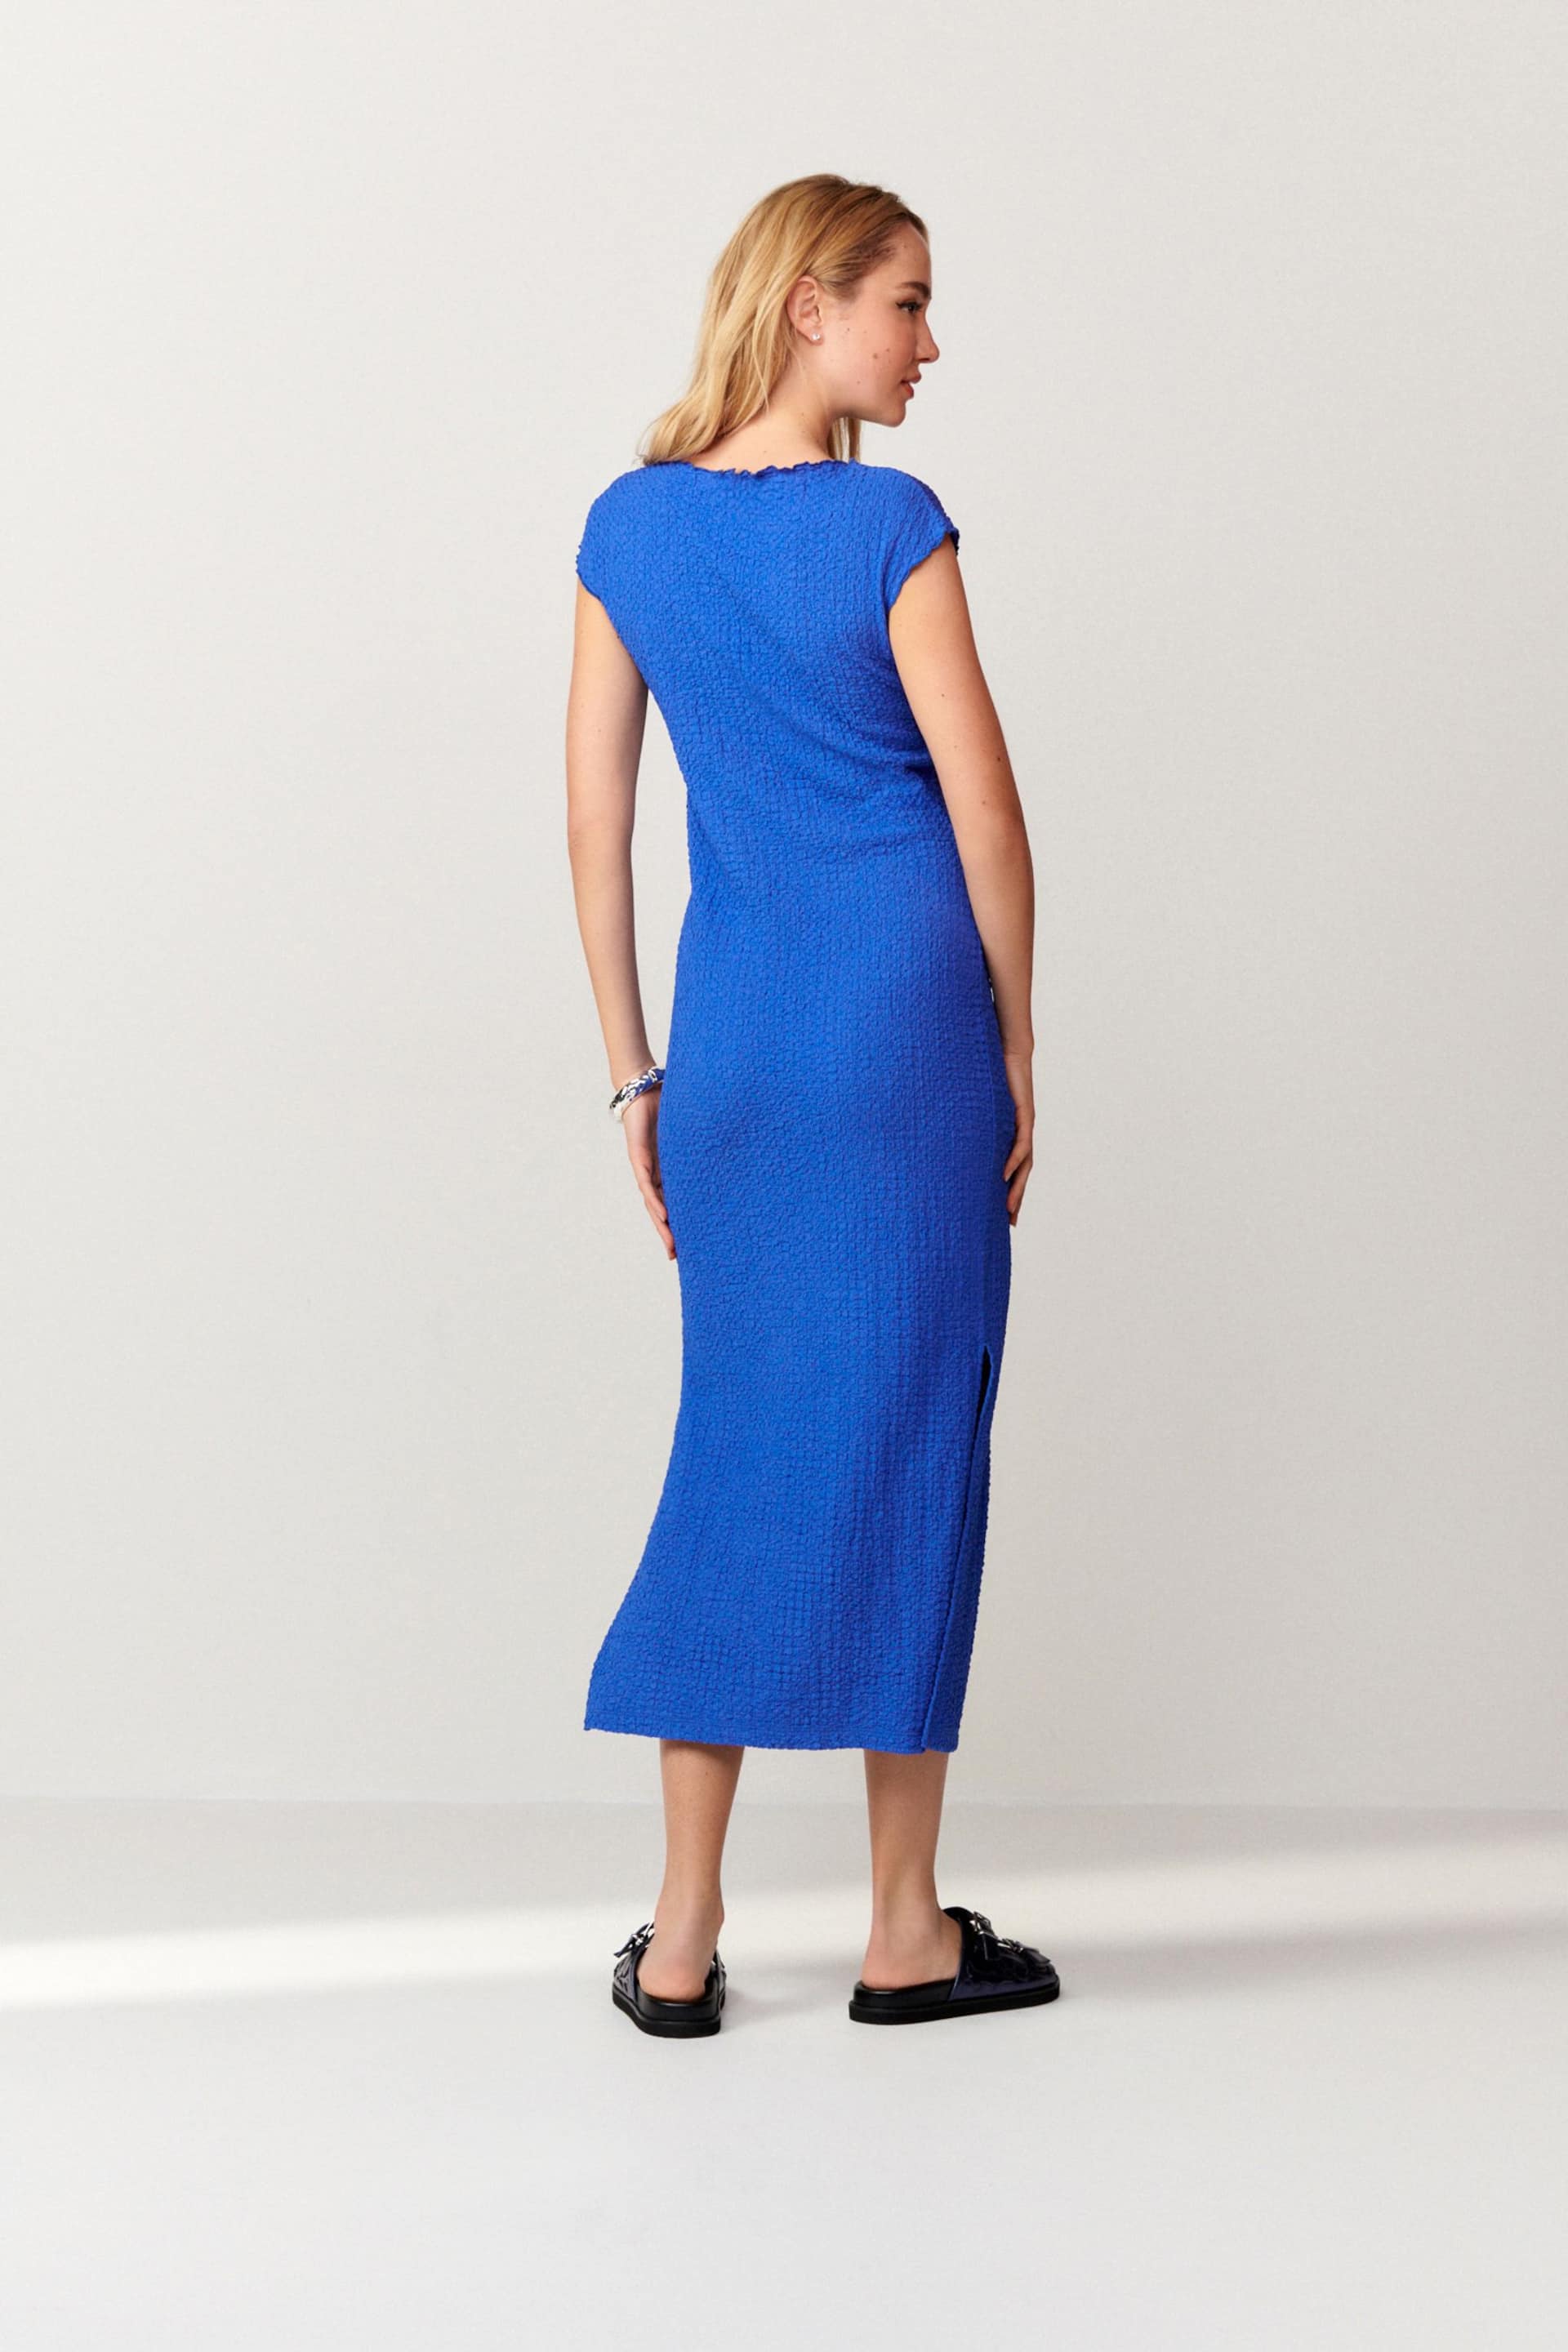 Cobalt Blue Short Sleeve Textured Column Jersey Dress - Image 3 of 7